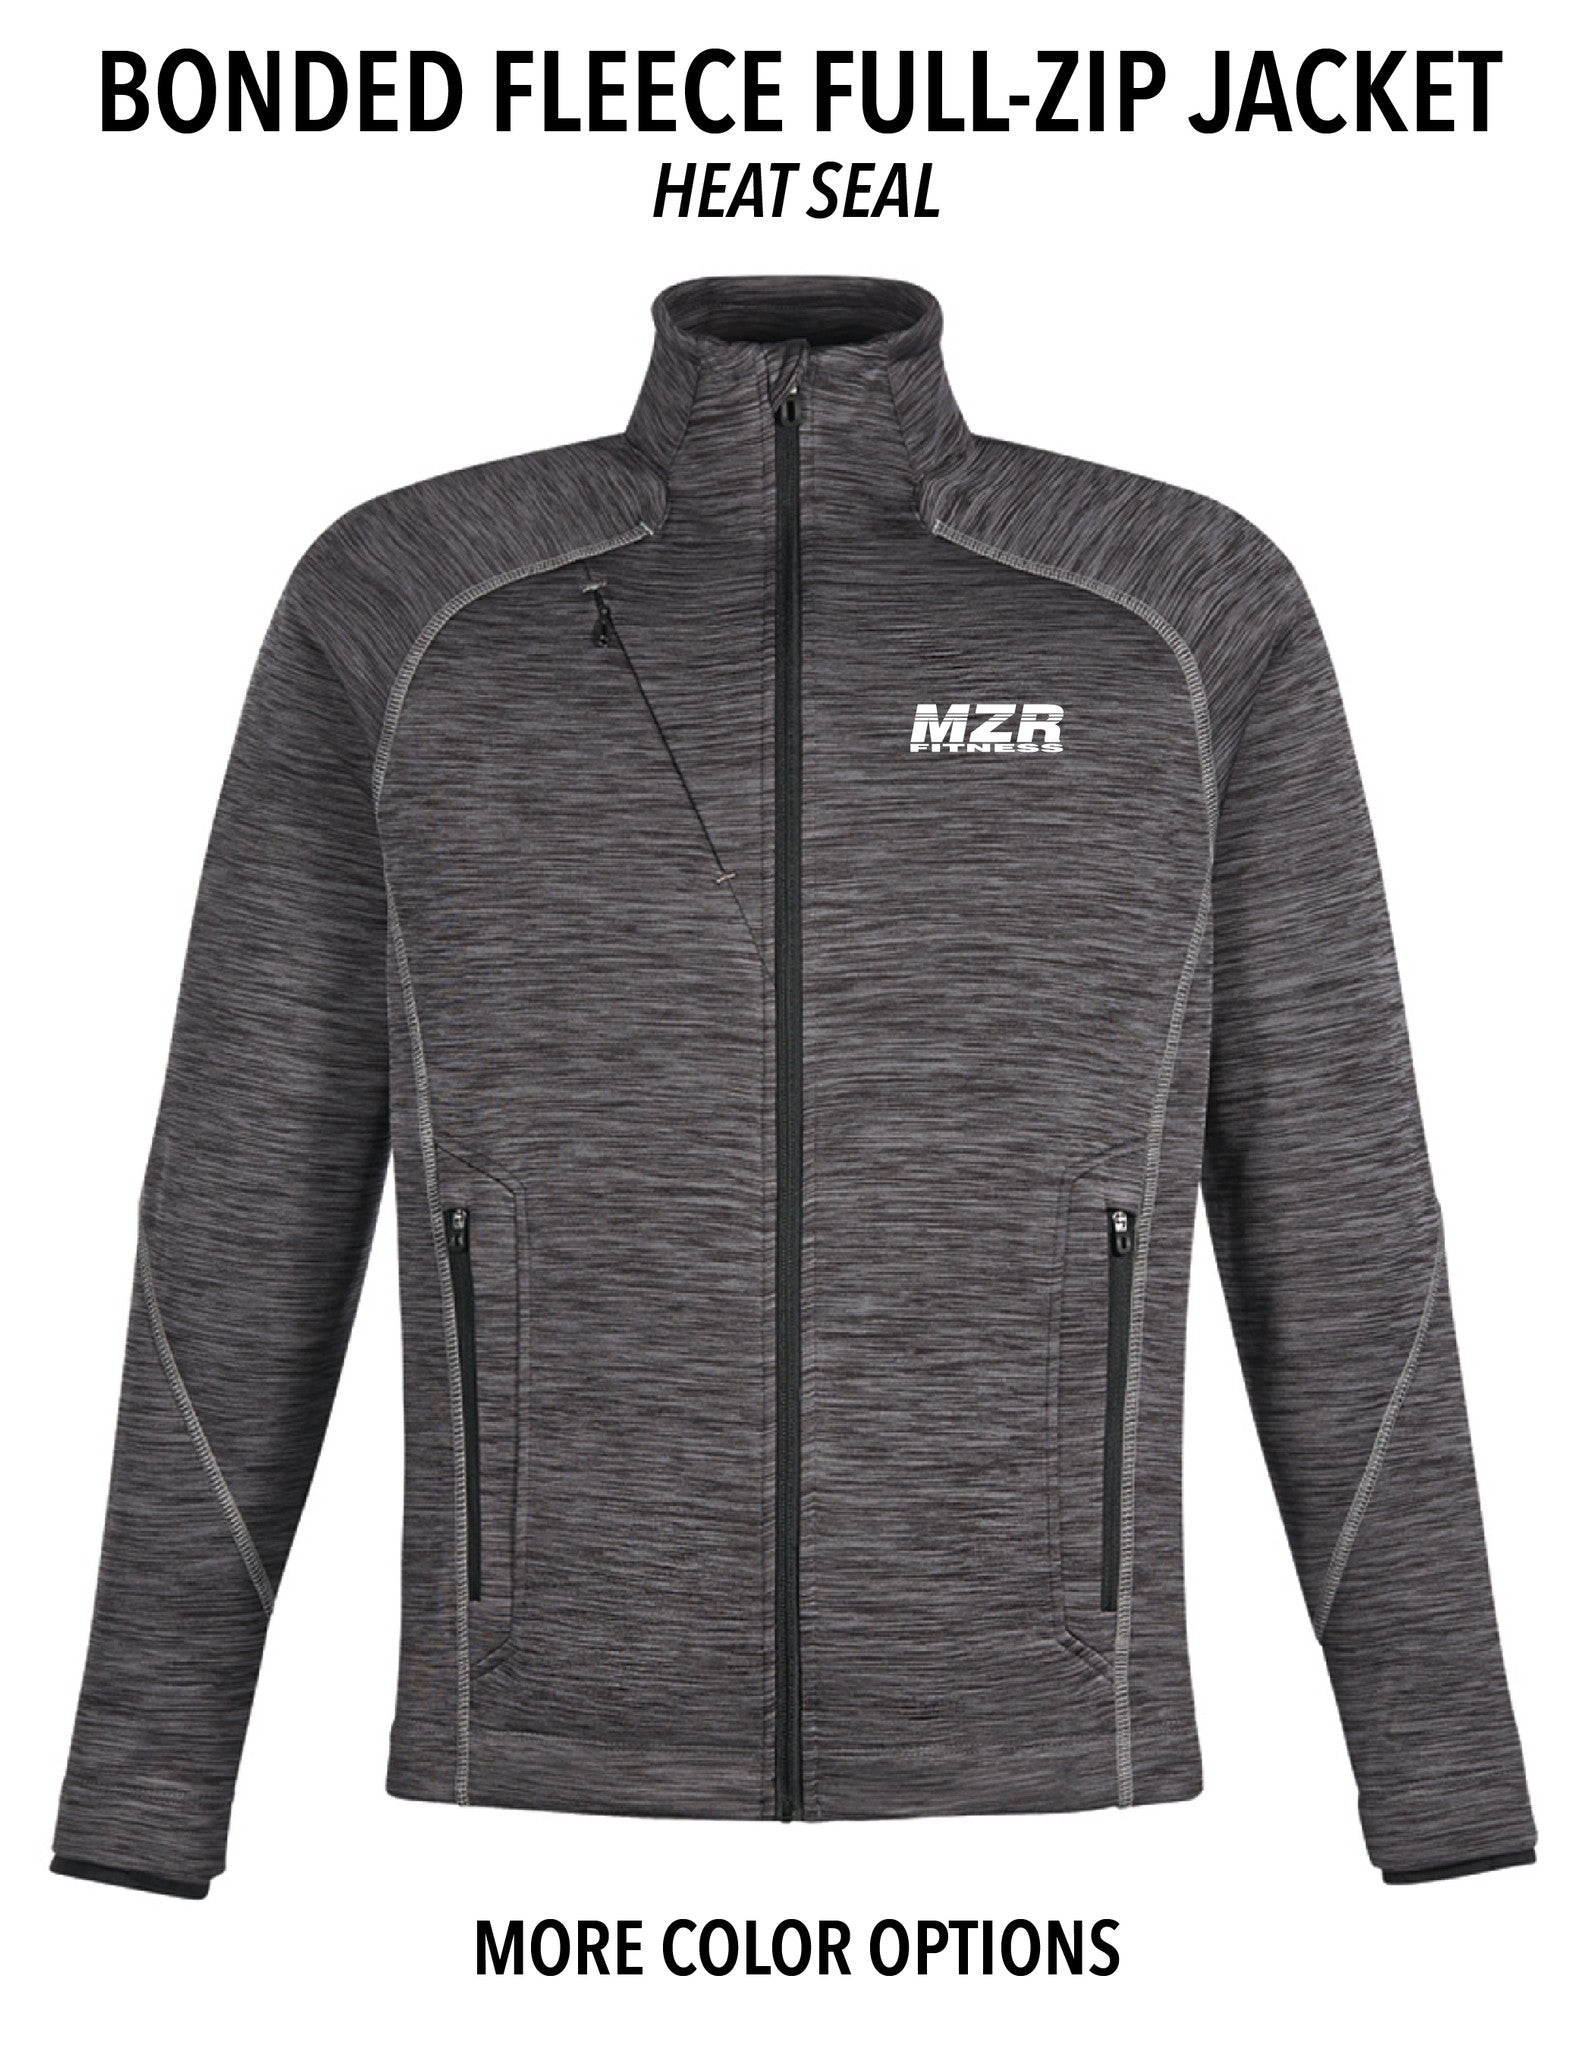 MZR - Bonded Fleece Full-Zip Jacket